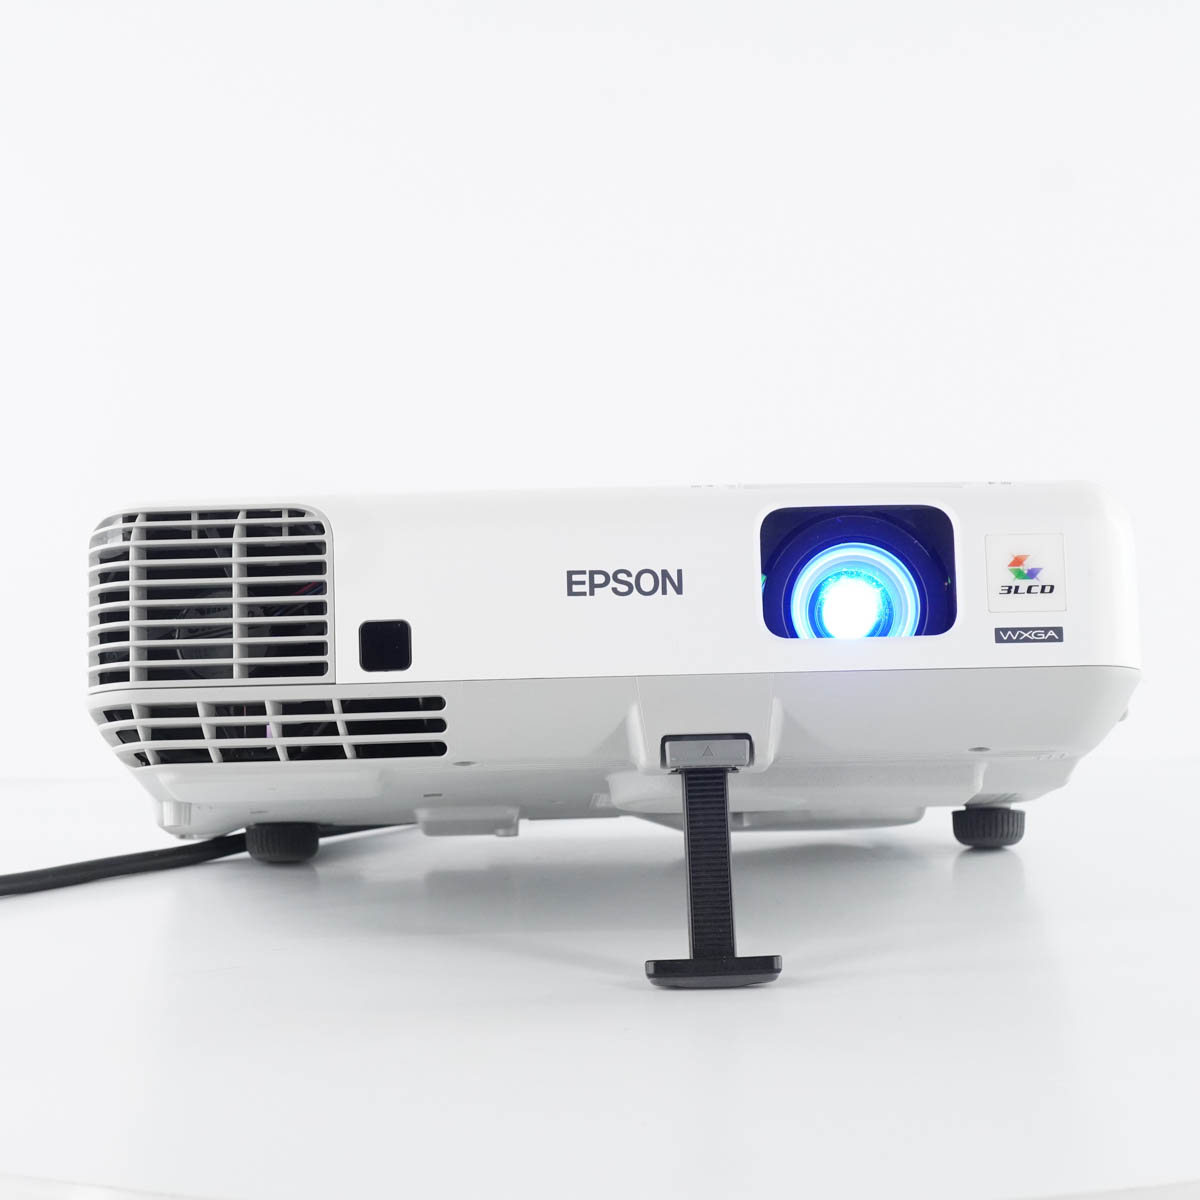 PG]USED 8日保証 ランプ225時間 EPSON EB-935W H565D プロジェクター 